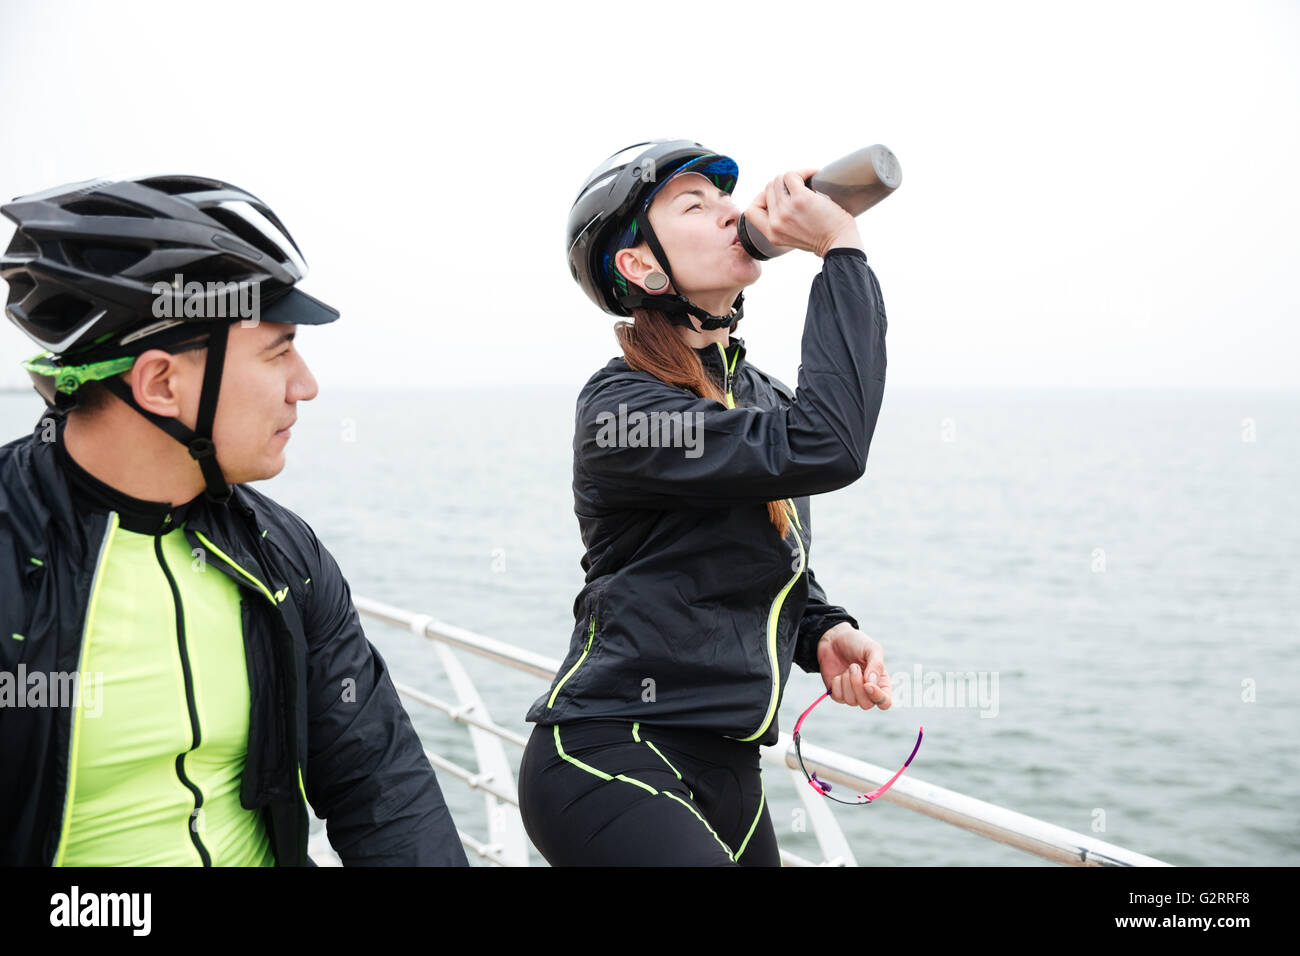 Zwei Radfahrer ruht in der Nähe von Meer. Trinkwasser für Frau und Mann sah auf dem Meer Stockfoto